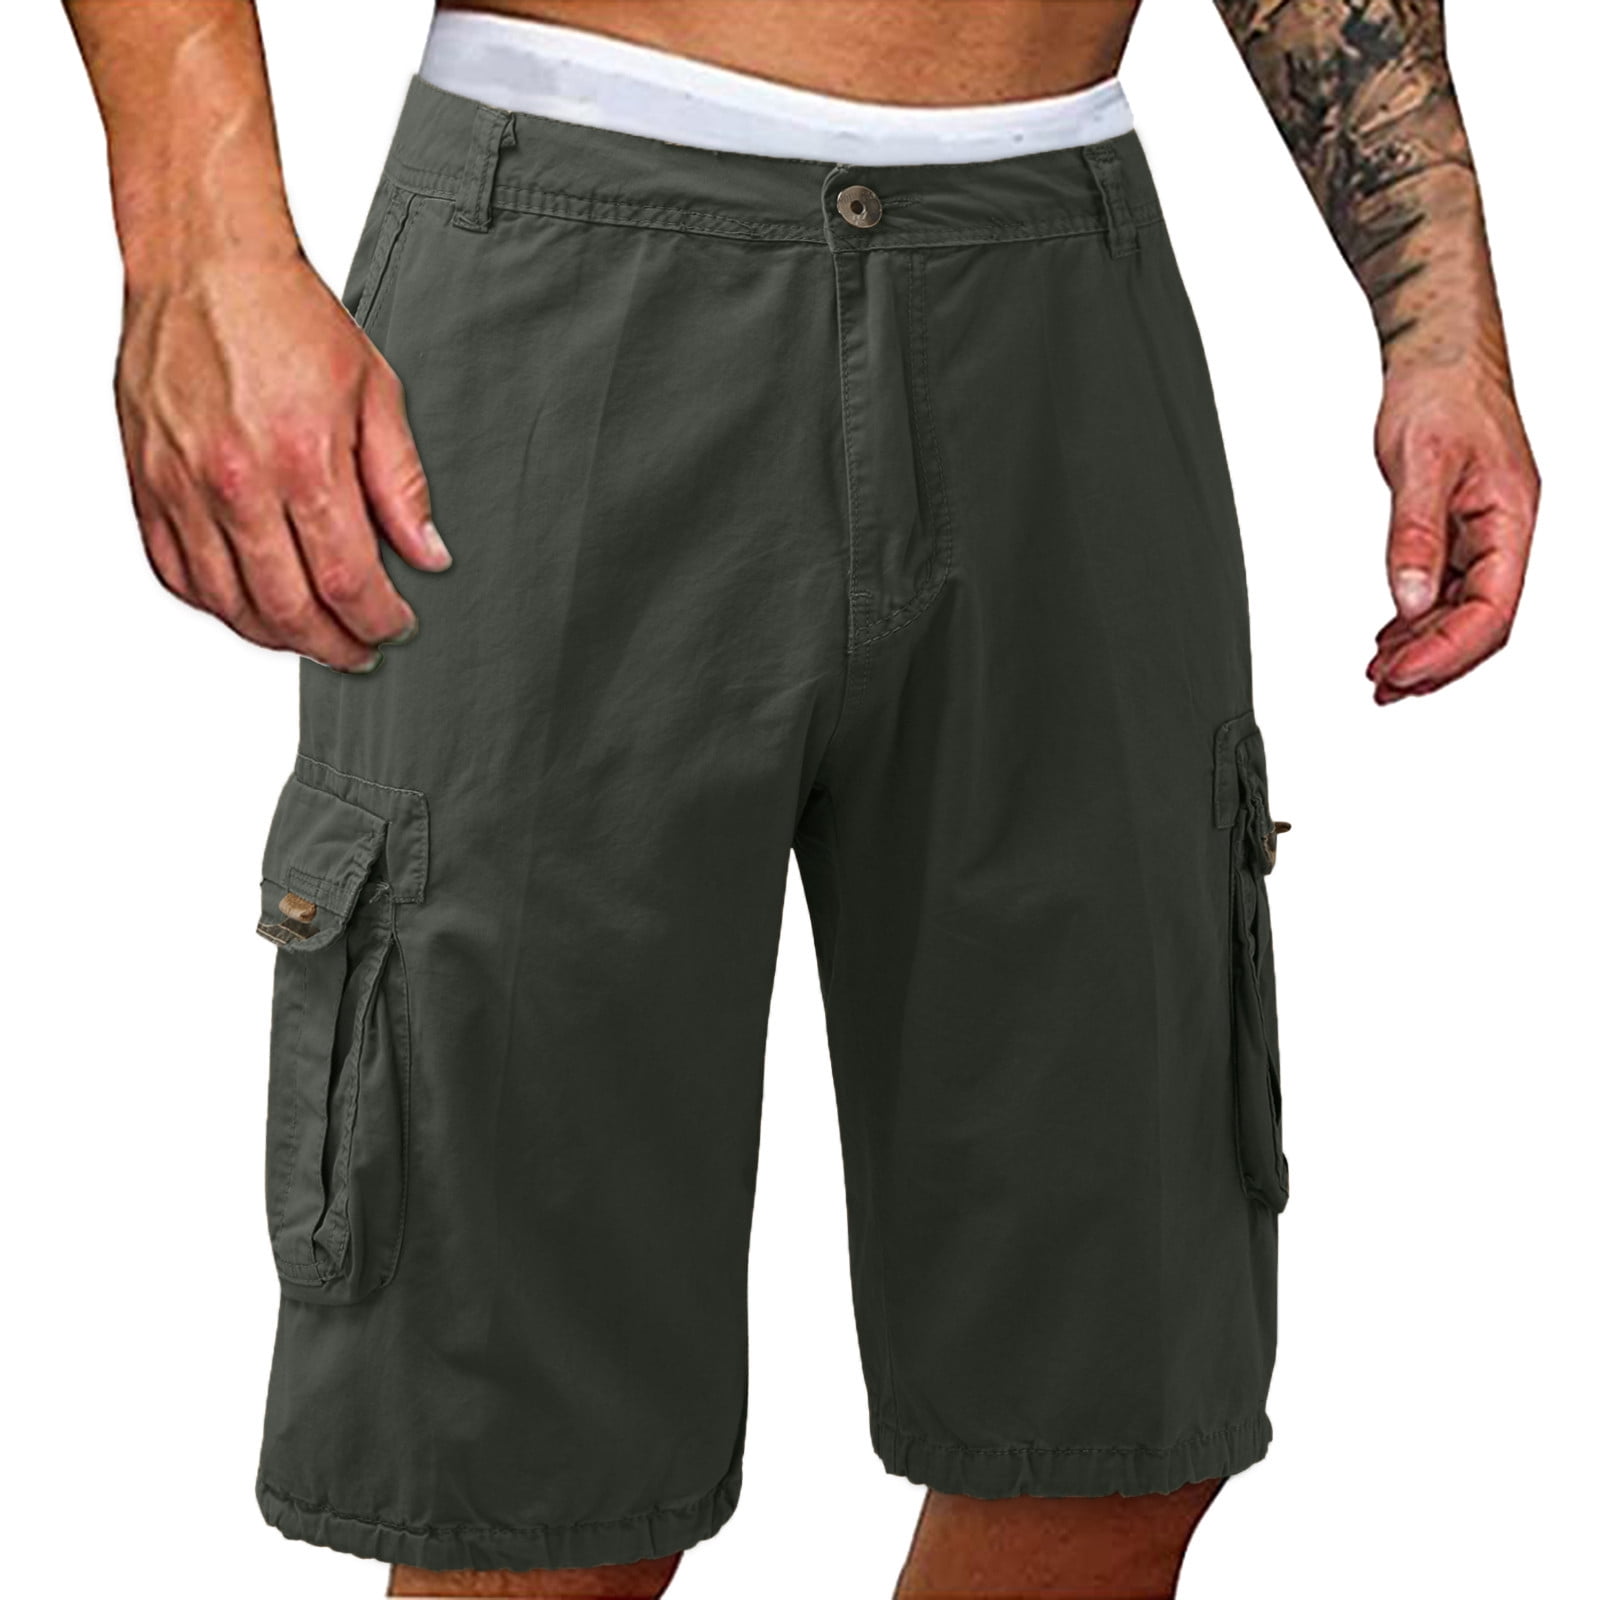 Wozhidaoke Cargo Pants For Men Men Fashion Casual Short Trouser